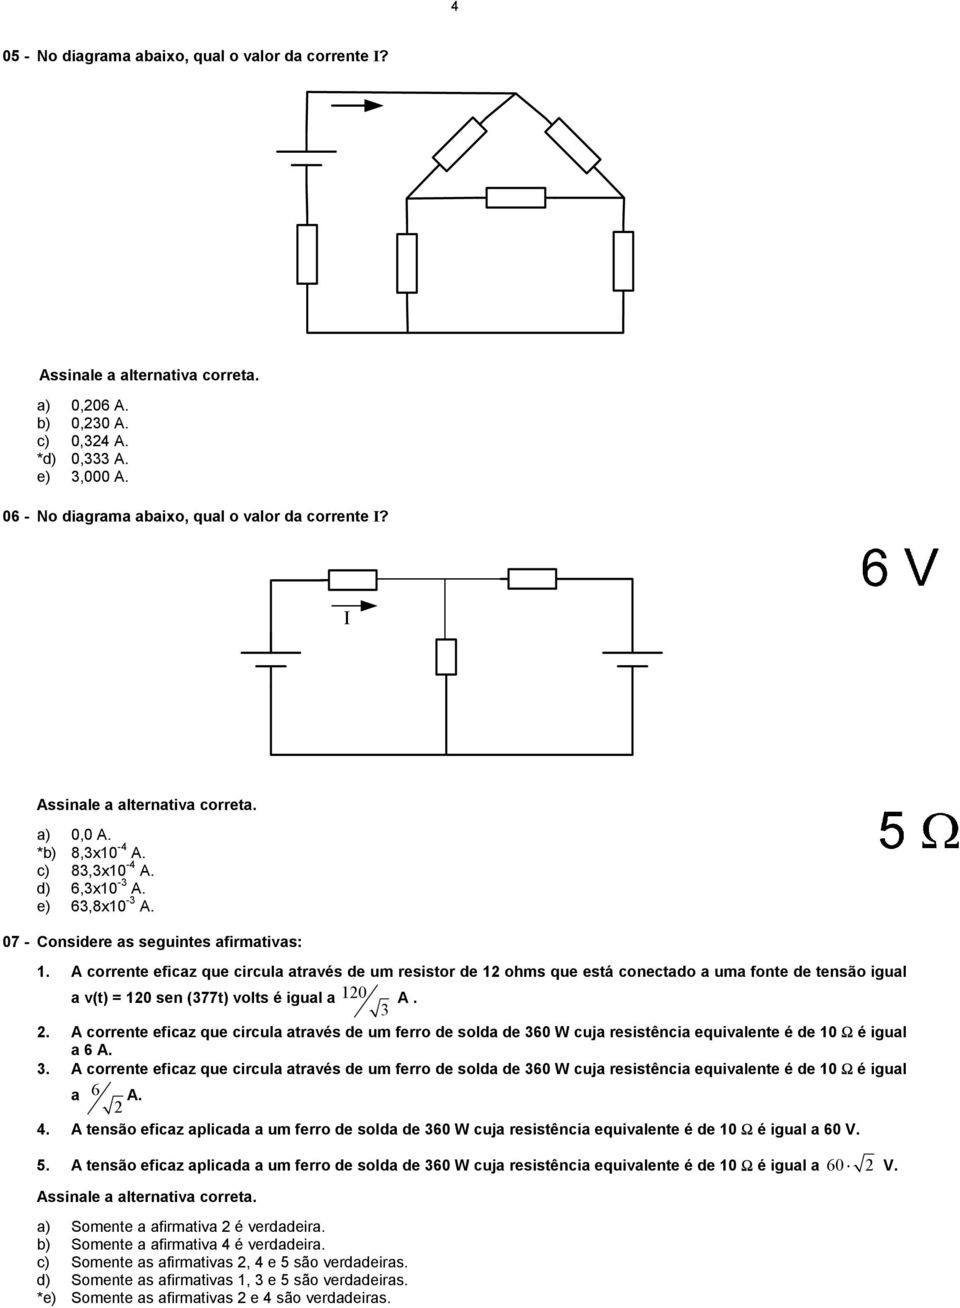 A corrente eficaz que circula através de um resistor de 12 ohms que está conectado a uma fonte de tensão igual a v(t) = 12 sen (377t) volts é igual a 12 3 A. 2.